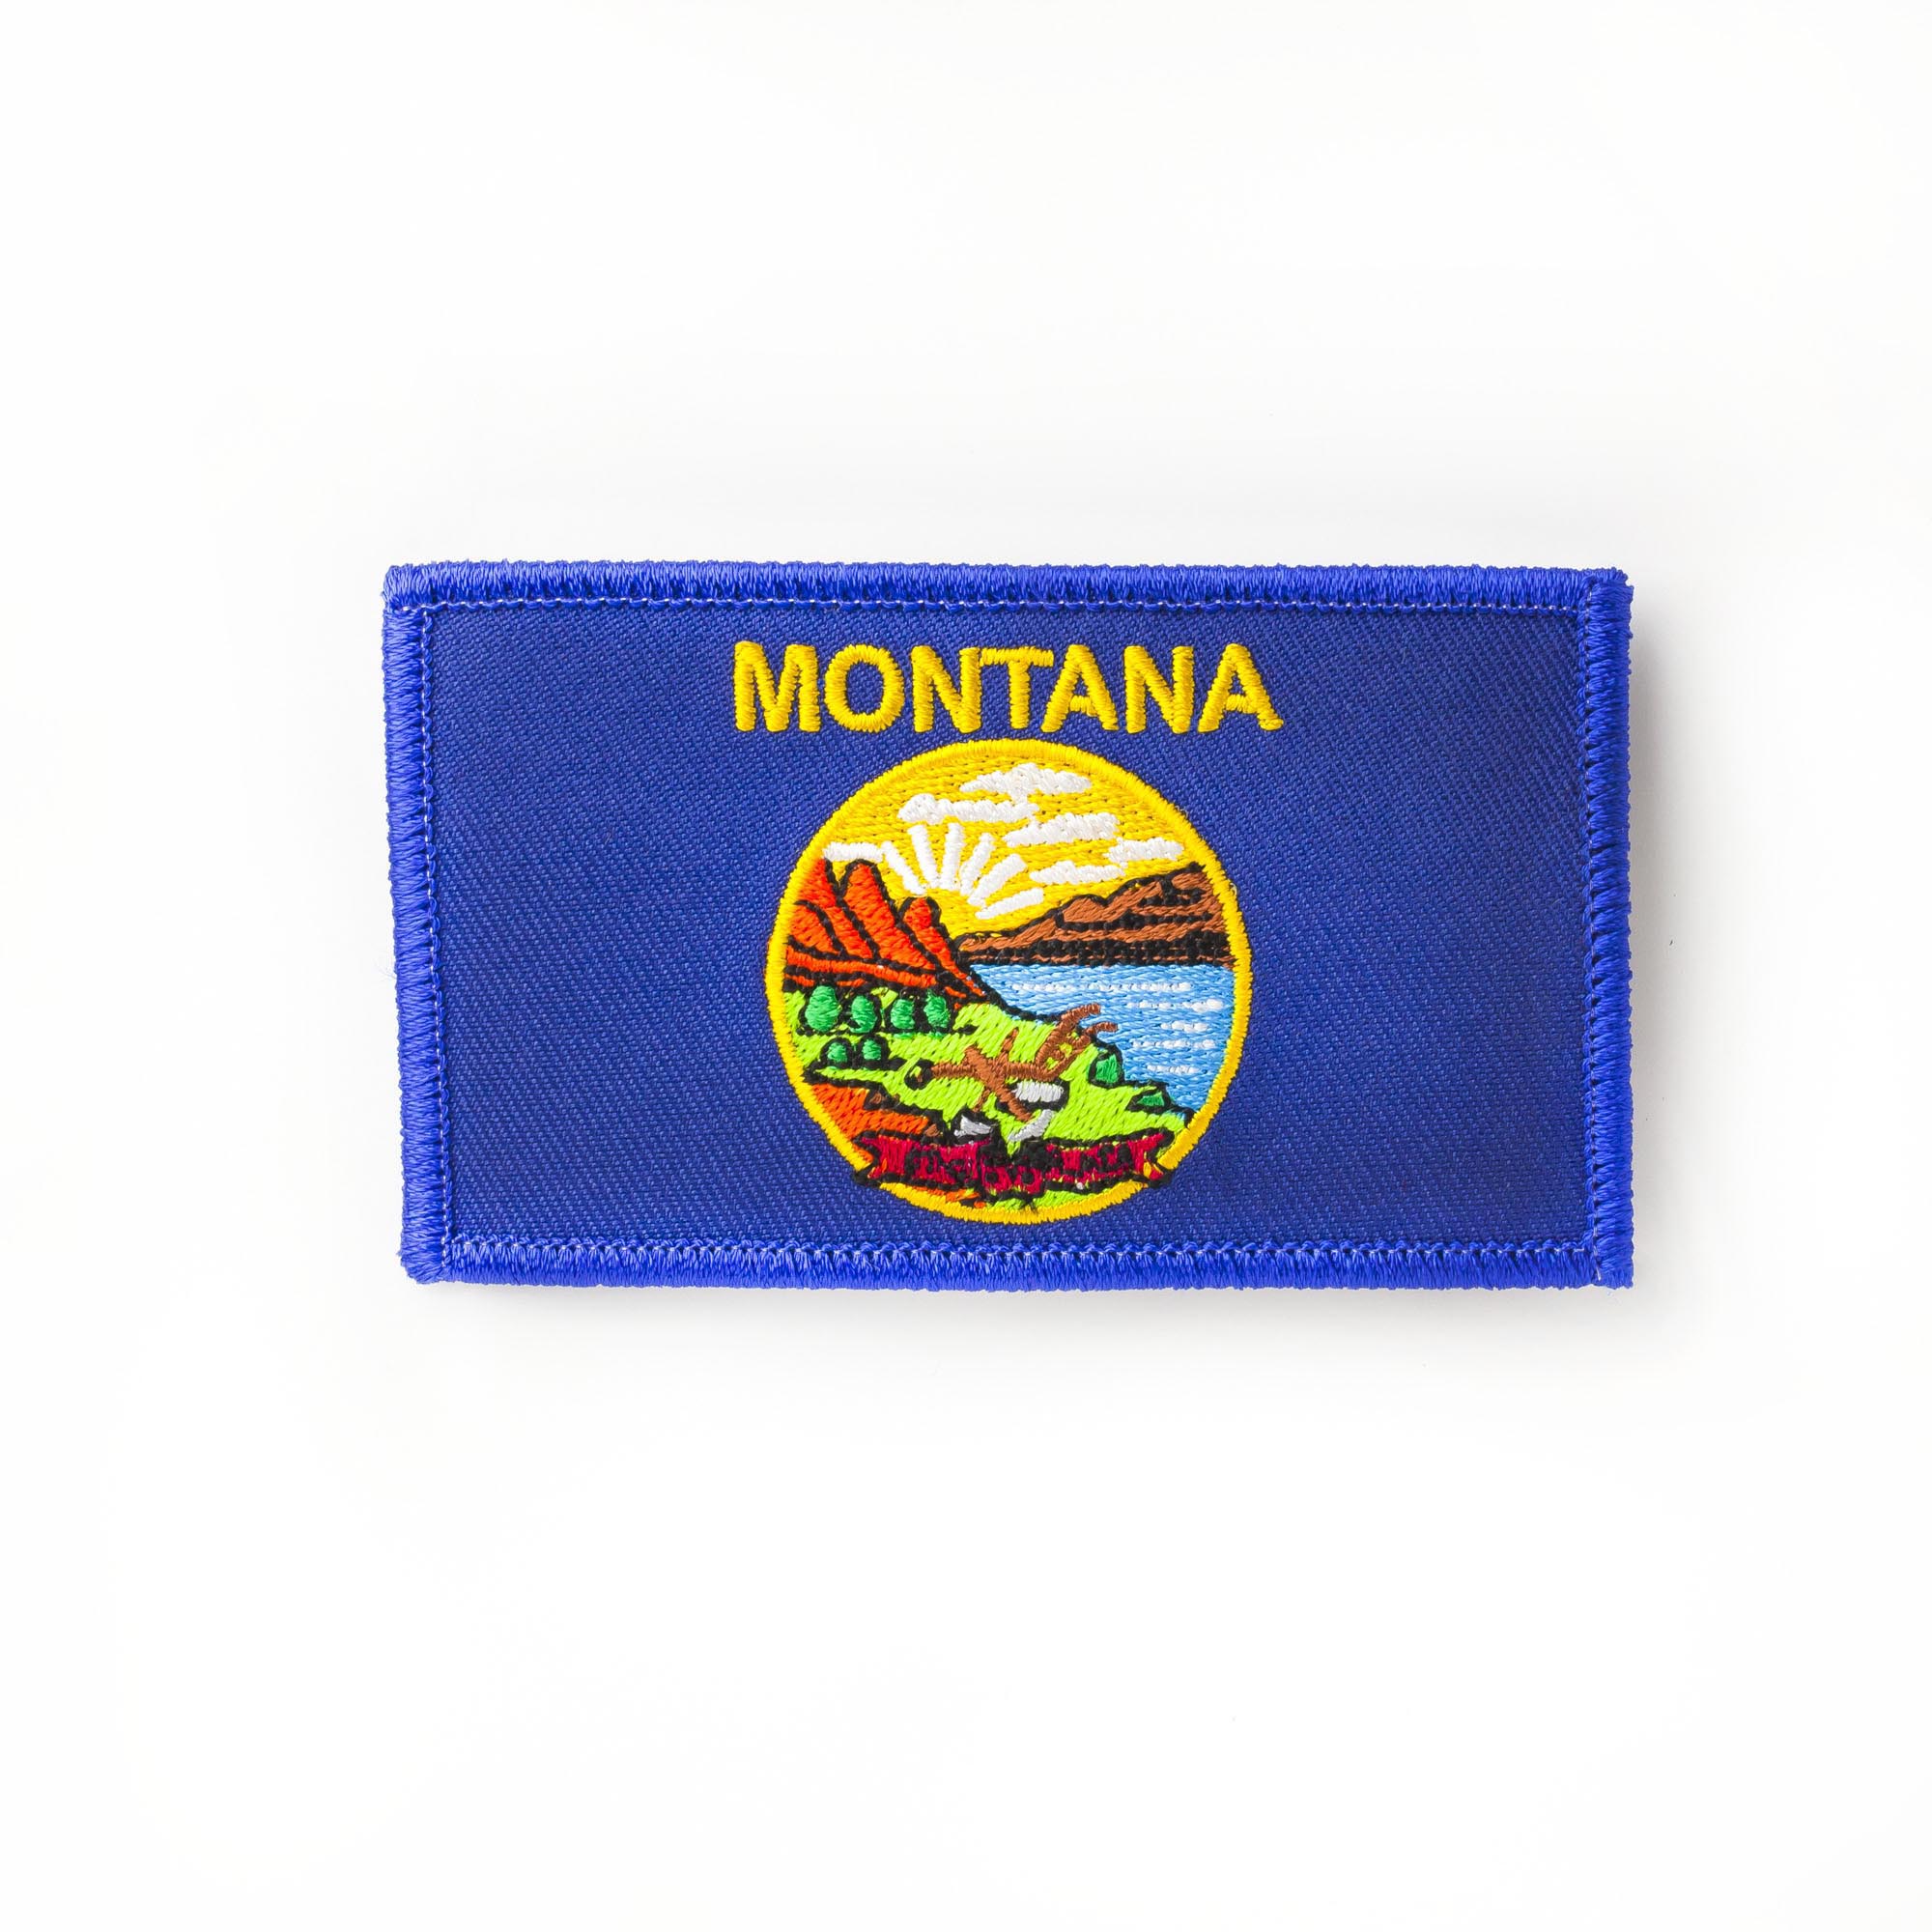 Montana – ES1900550